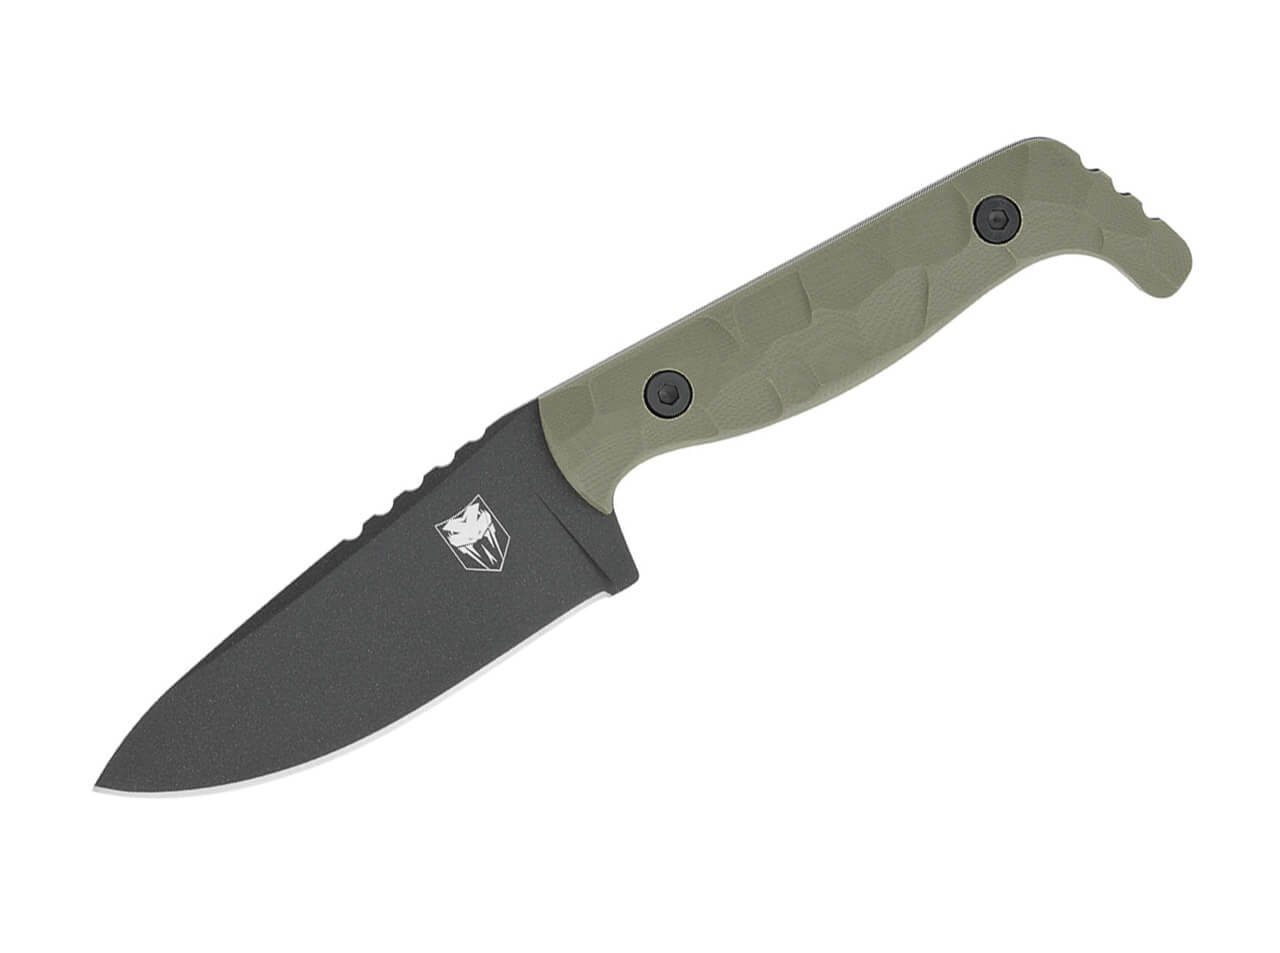 Böker Plus Universalmesser CobraTec Kingpin G10 OD Green feststehendes Messer mit Kydexscheide | Taschenmesser